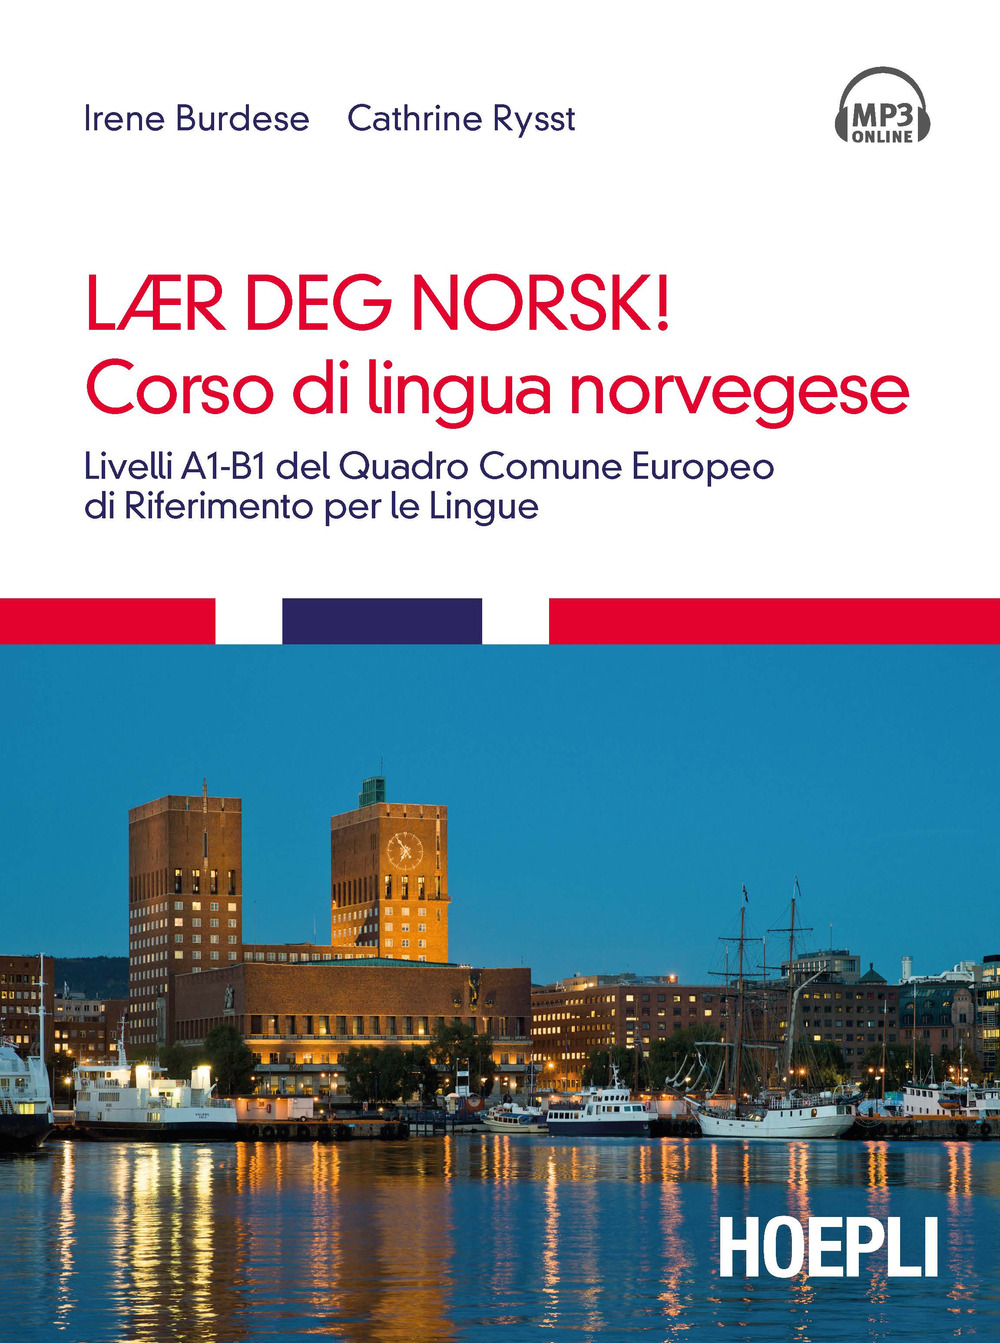 Corso di lingua norvegese. Livelli A1-B1 del quadro comune Europeo di riferimento per le lingue. Con tracce audio formato MP3 scaricabili online